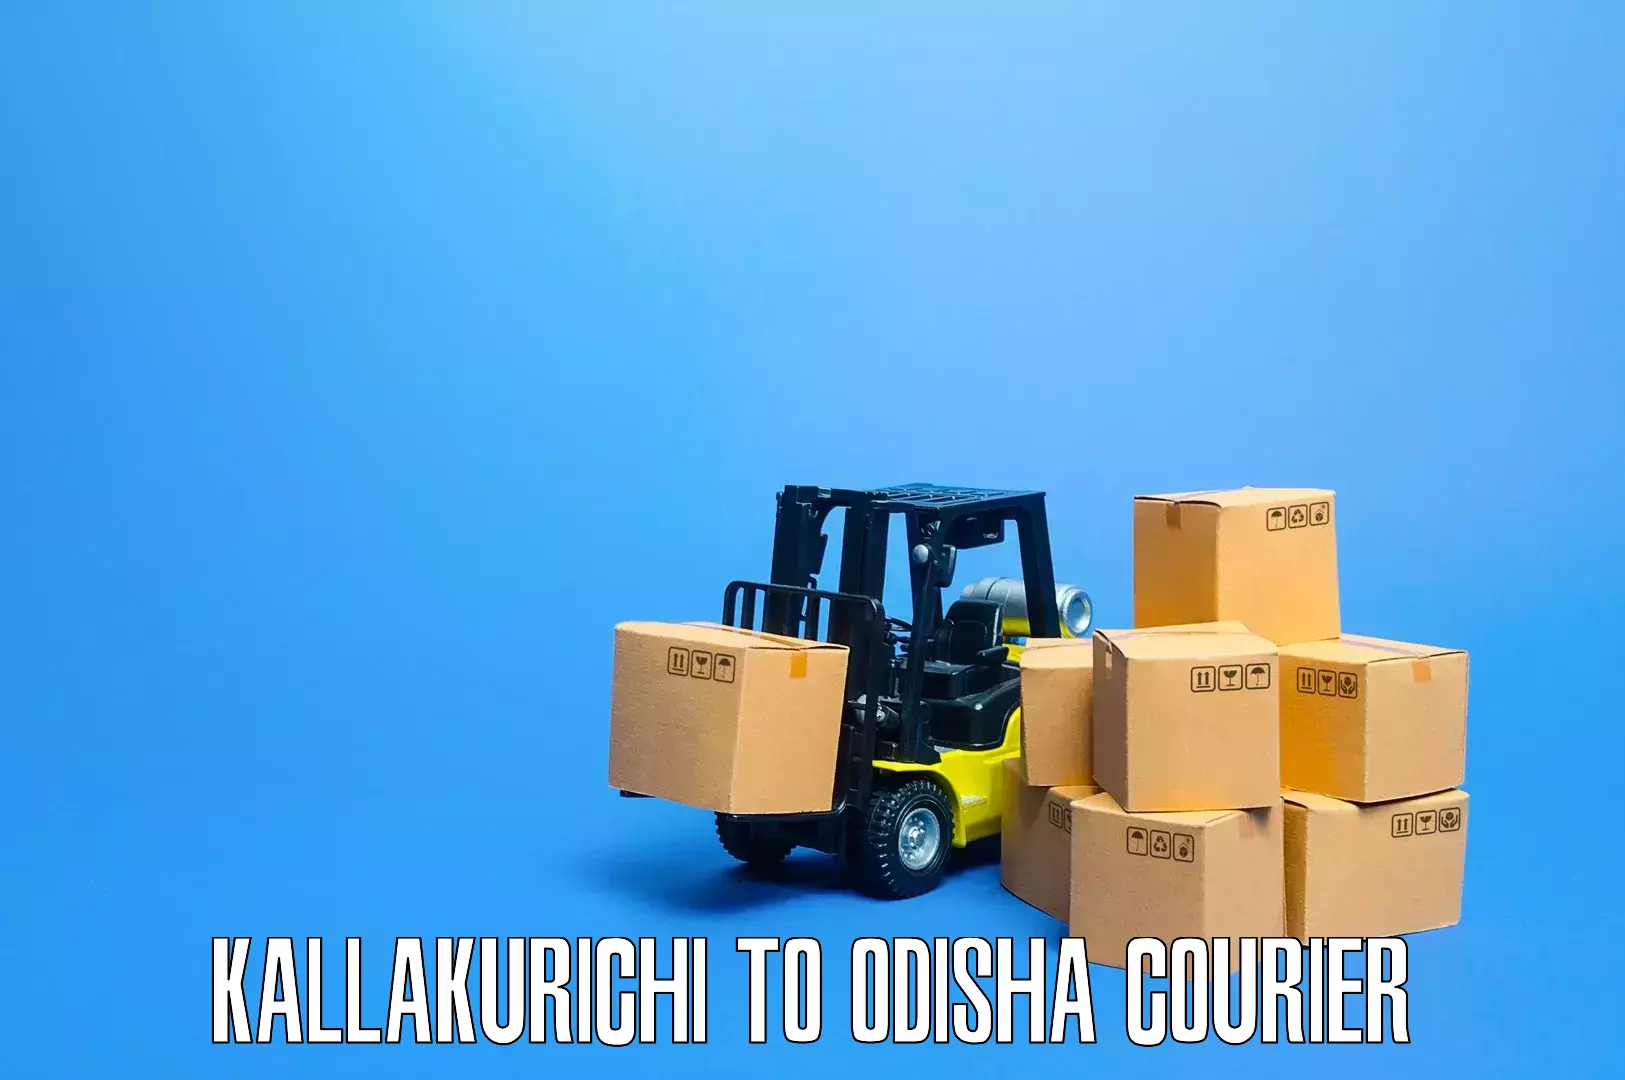 Furniture moving experts Kallakurichi to Hinjilicut